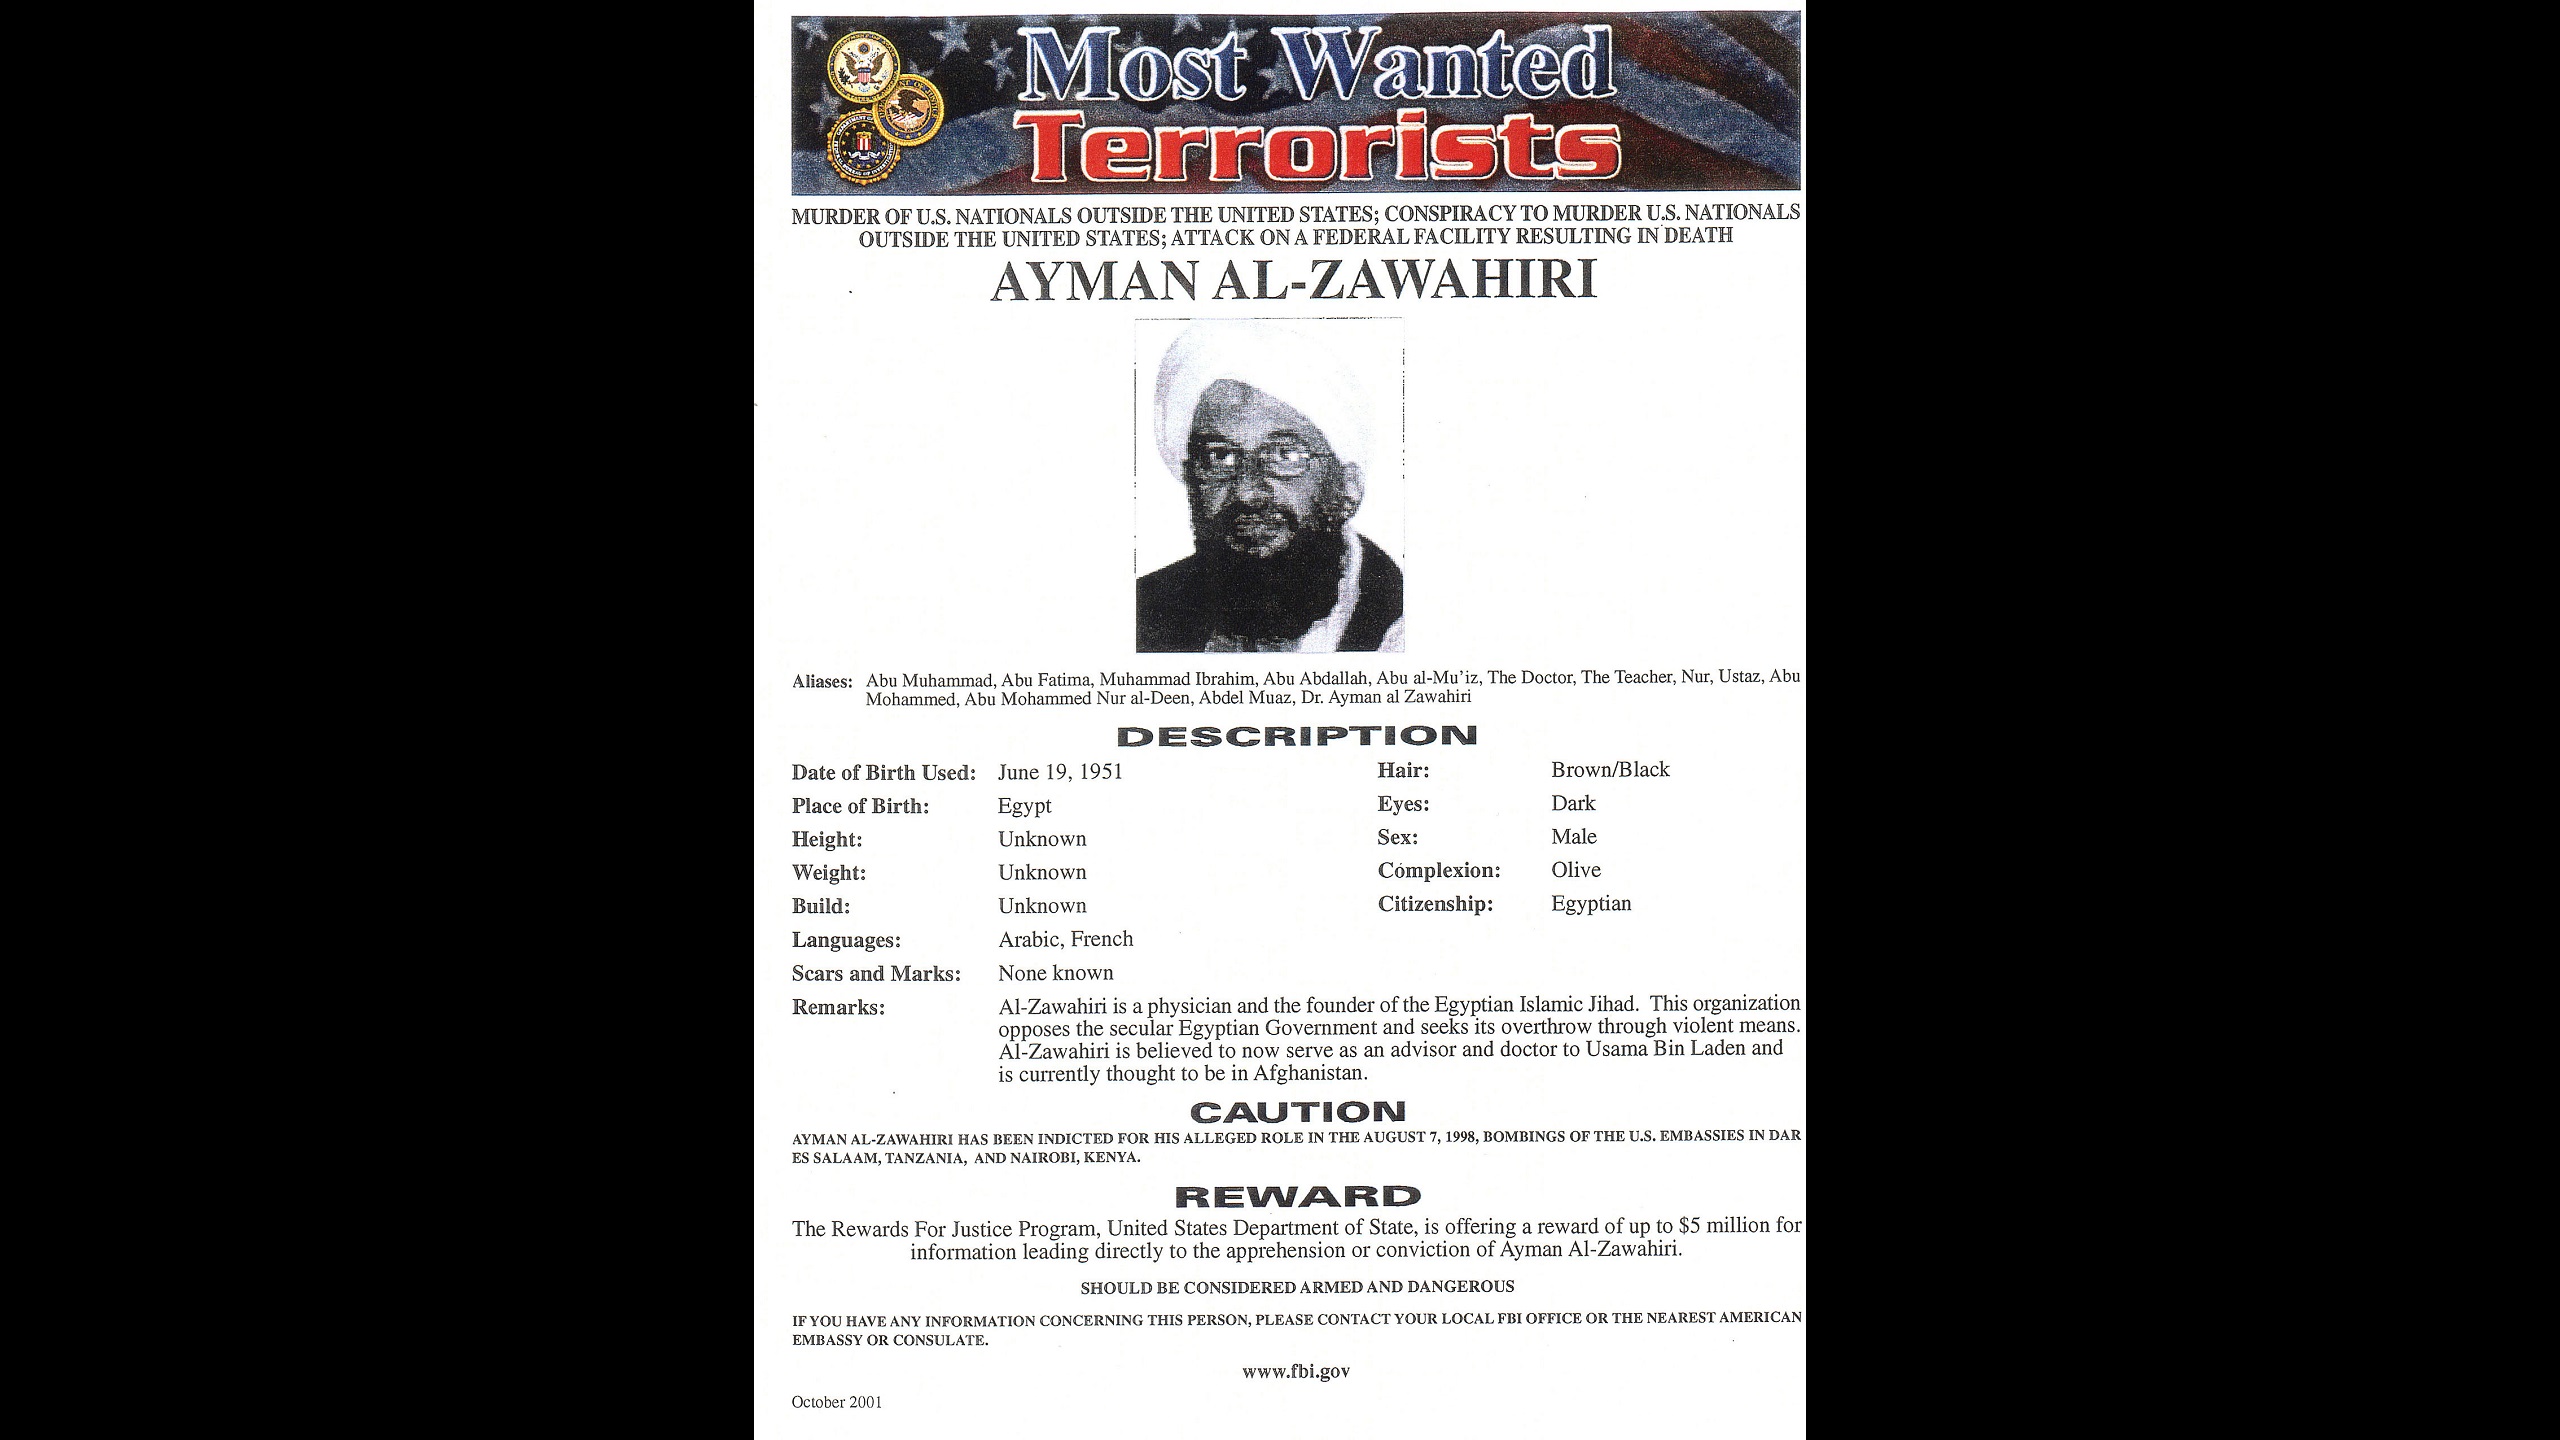 US Drone Strike Kills 9-11 Mastermind Ayman al-Zawahiri